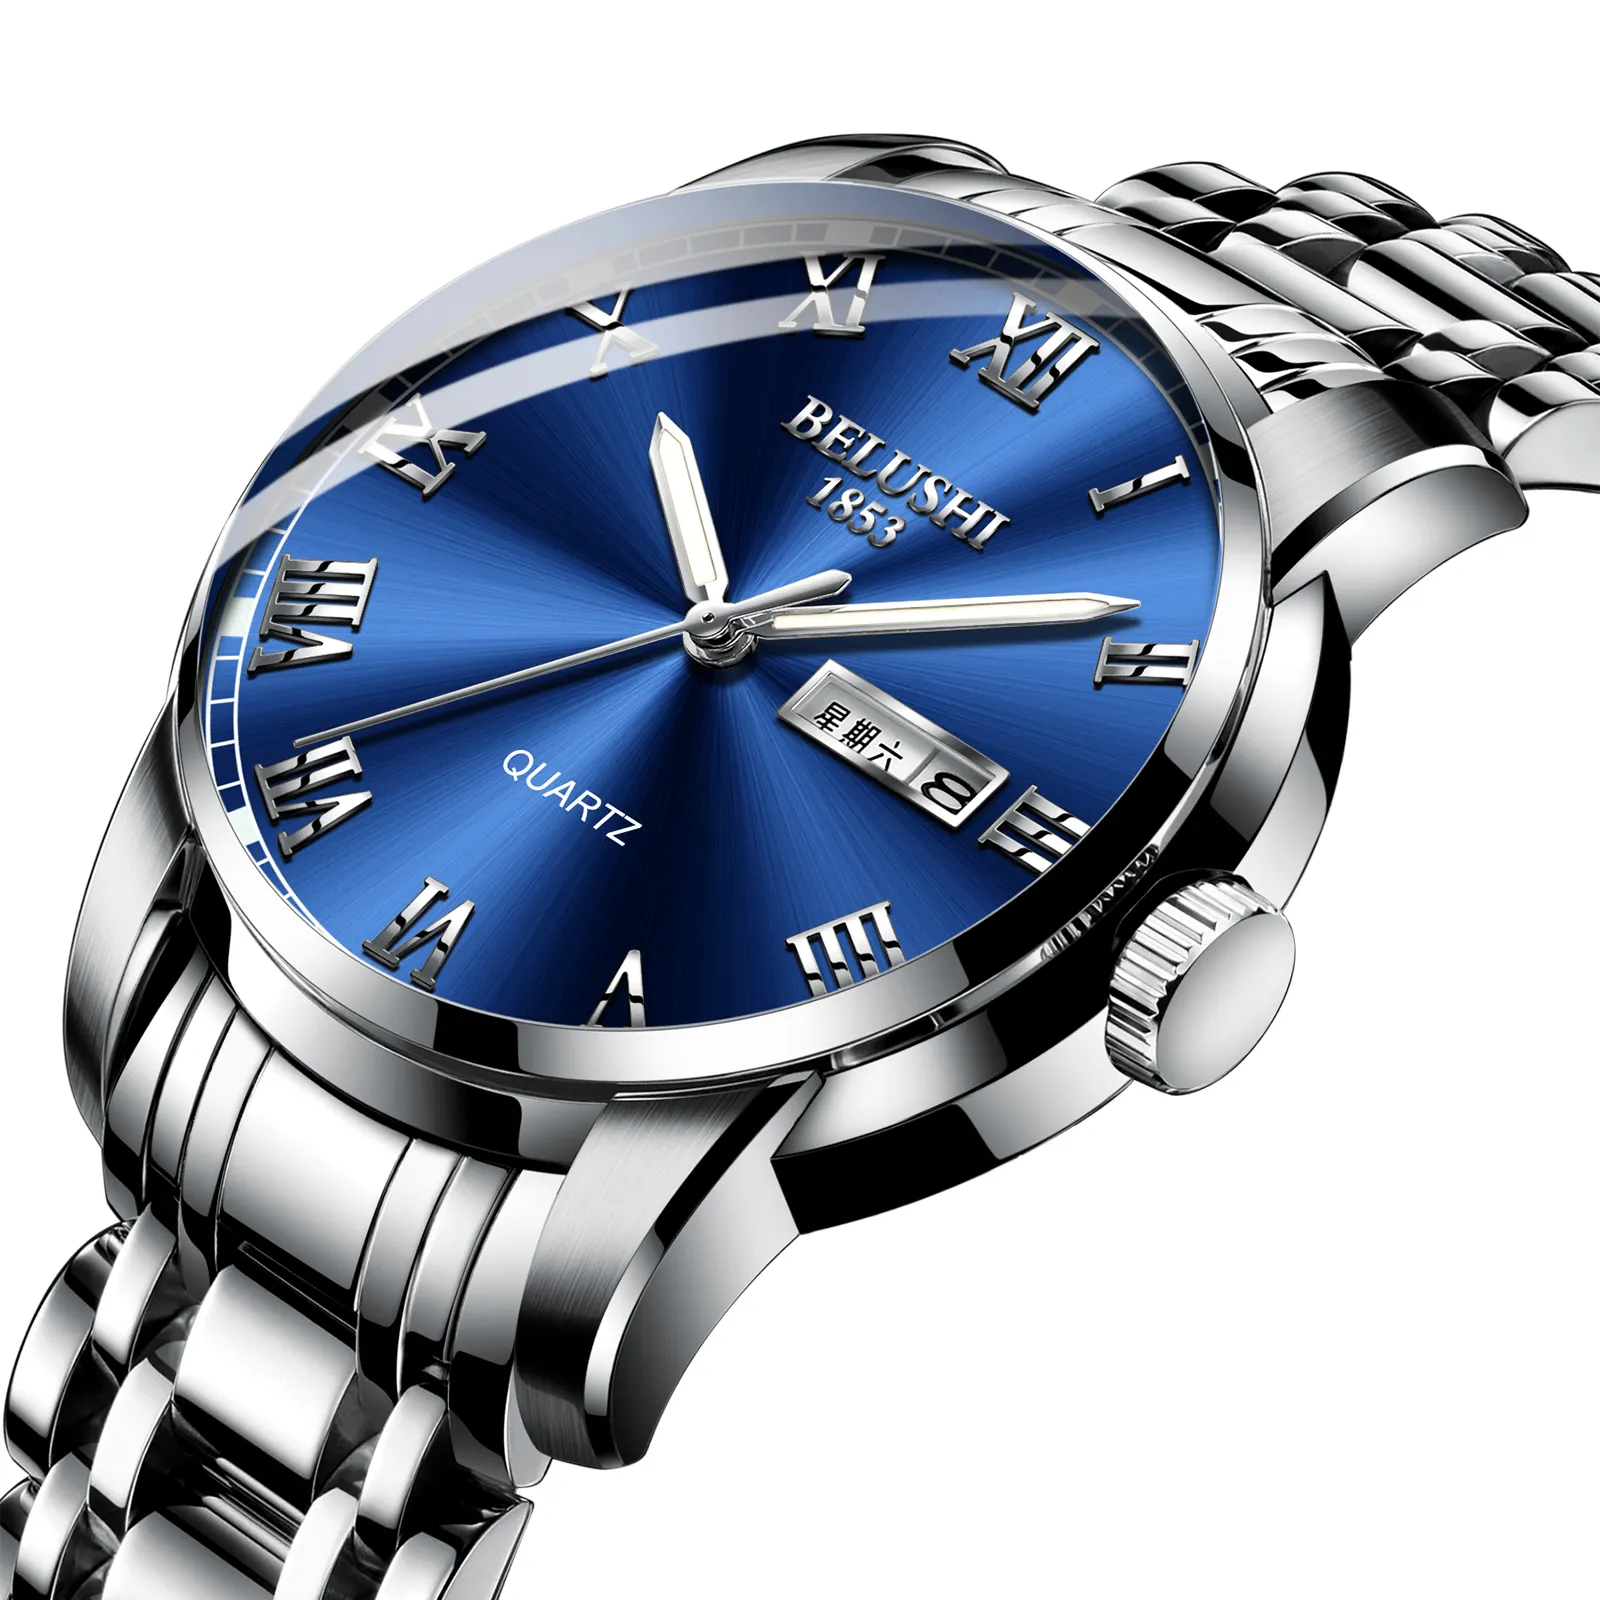 Wrist watch Casual design Fashion men's sports Waterproof Luminous Quartz watch